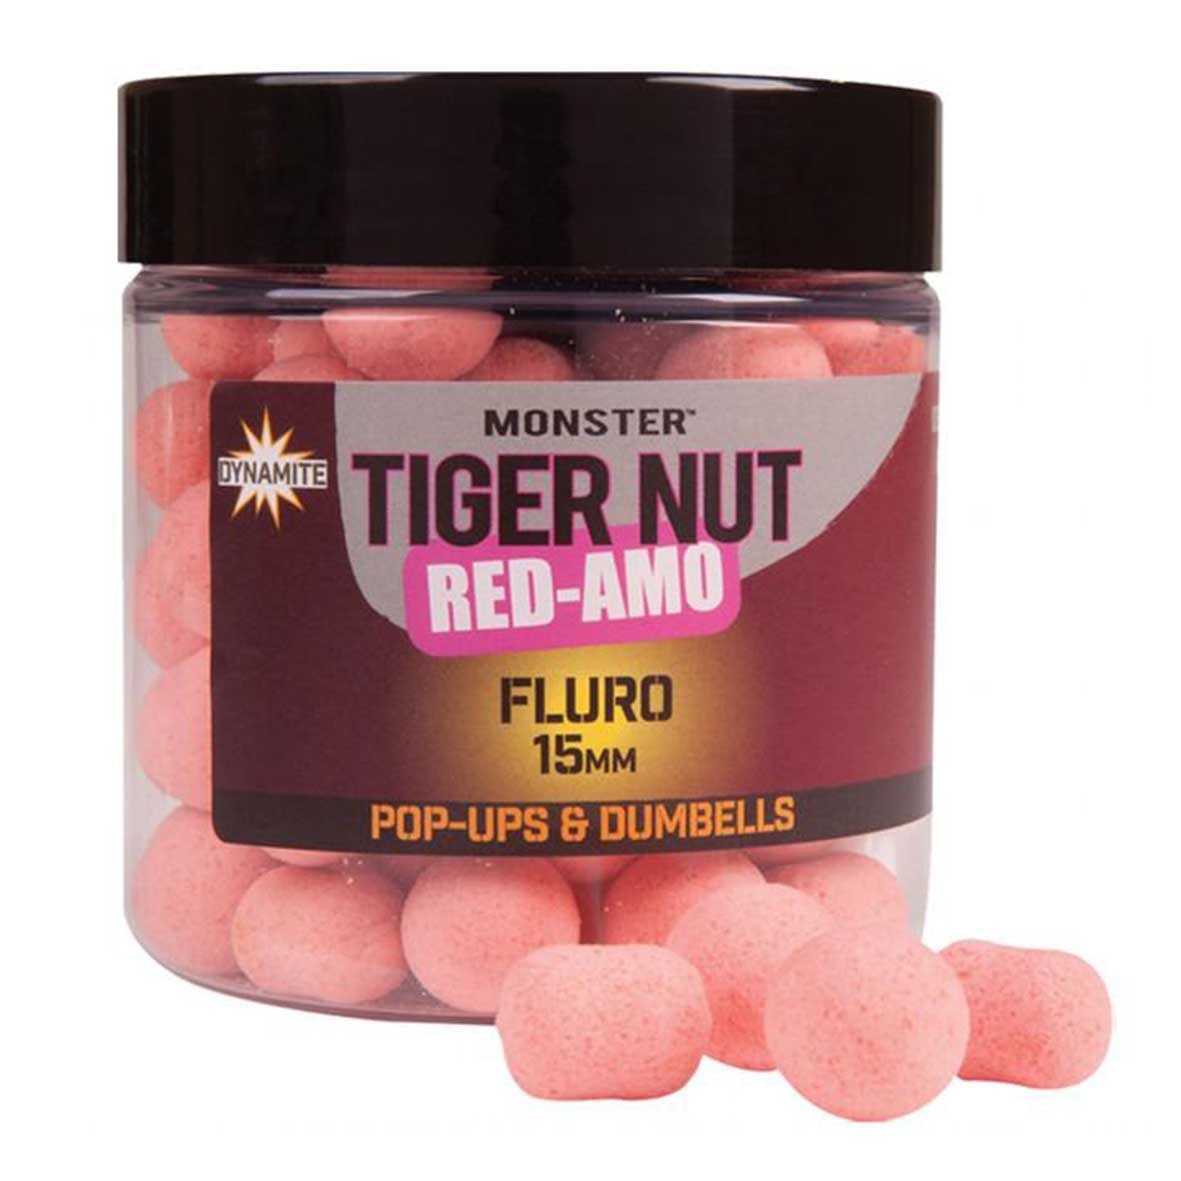 Dynamite Baits Pop-Ups Dumbells Fluro Monster Tiger Nut Red-Amo